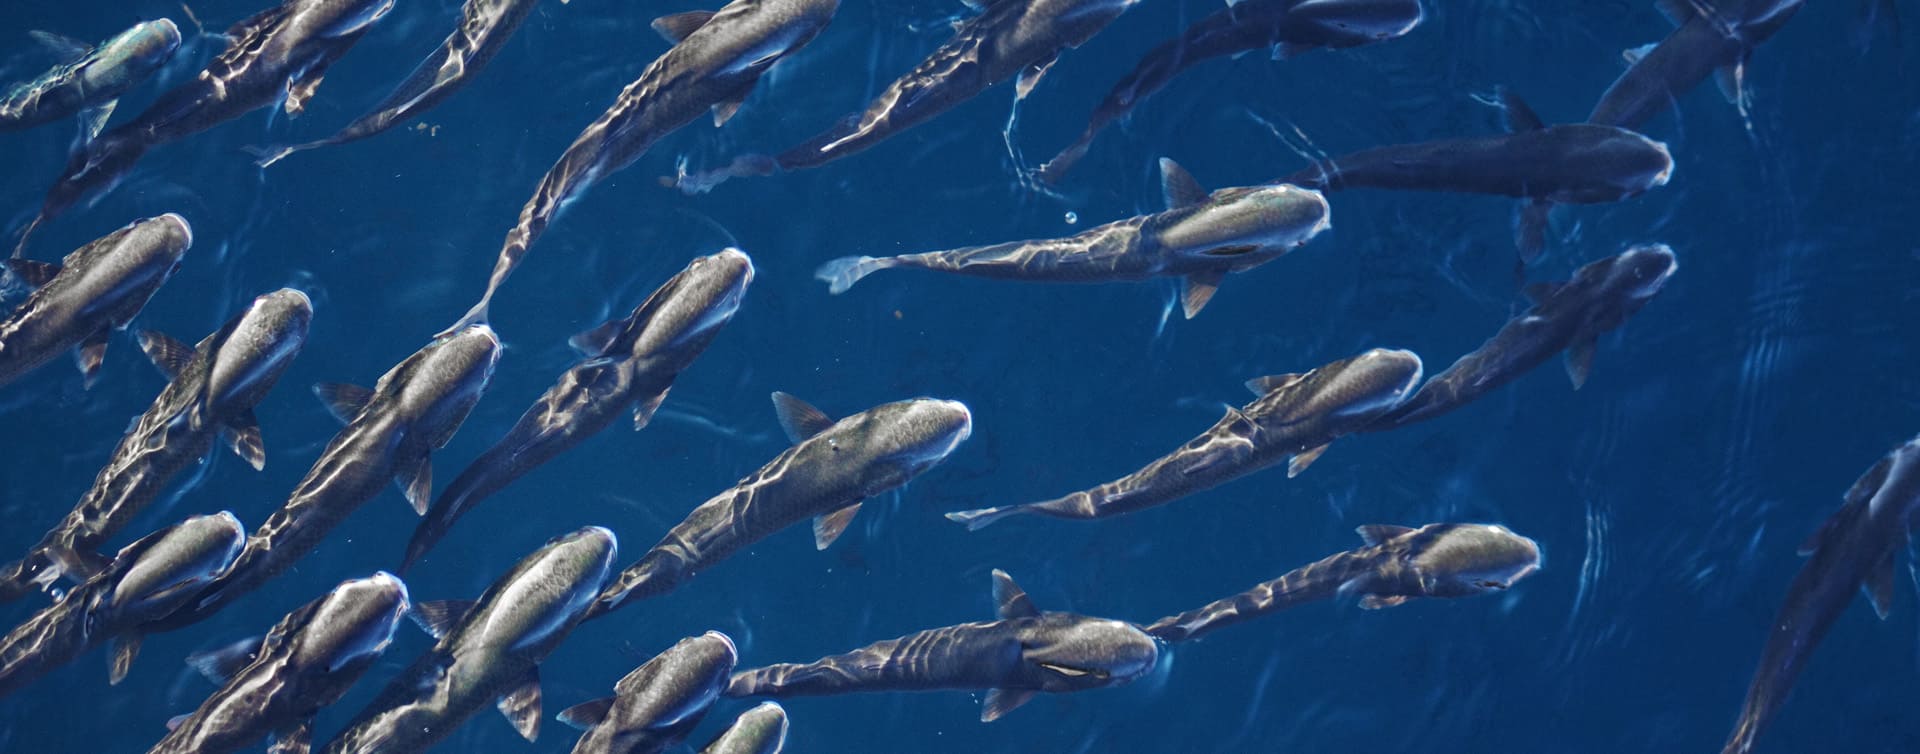 Basking Sharks offshore - background image.